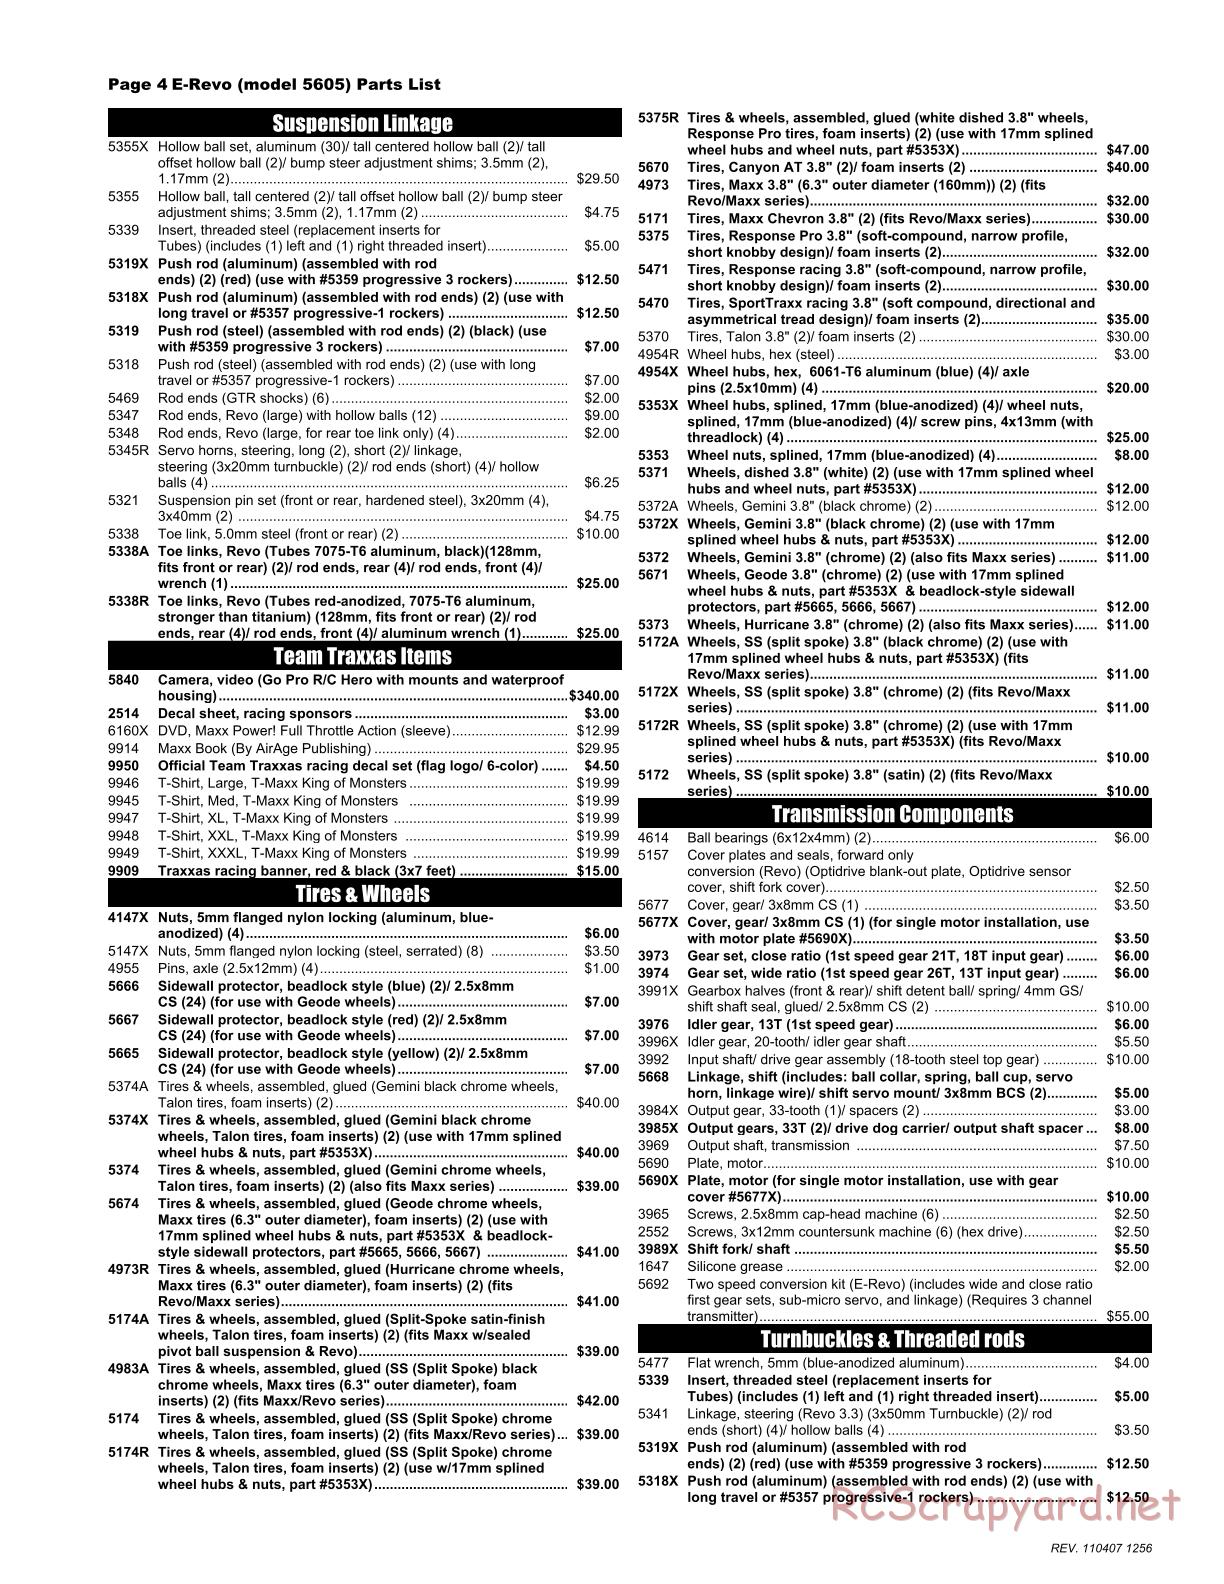 Traxxas - E-Revo (2008) - Parts List - Page 4